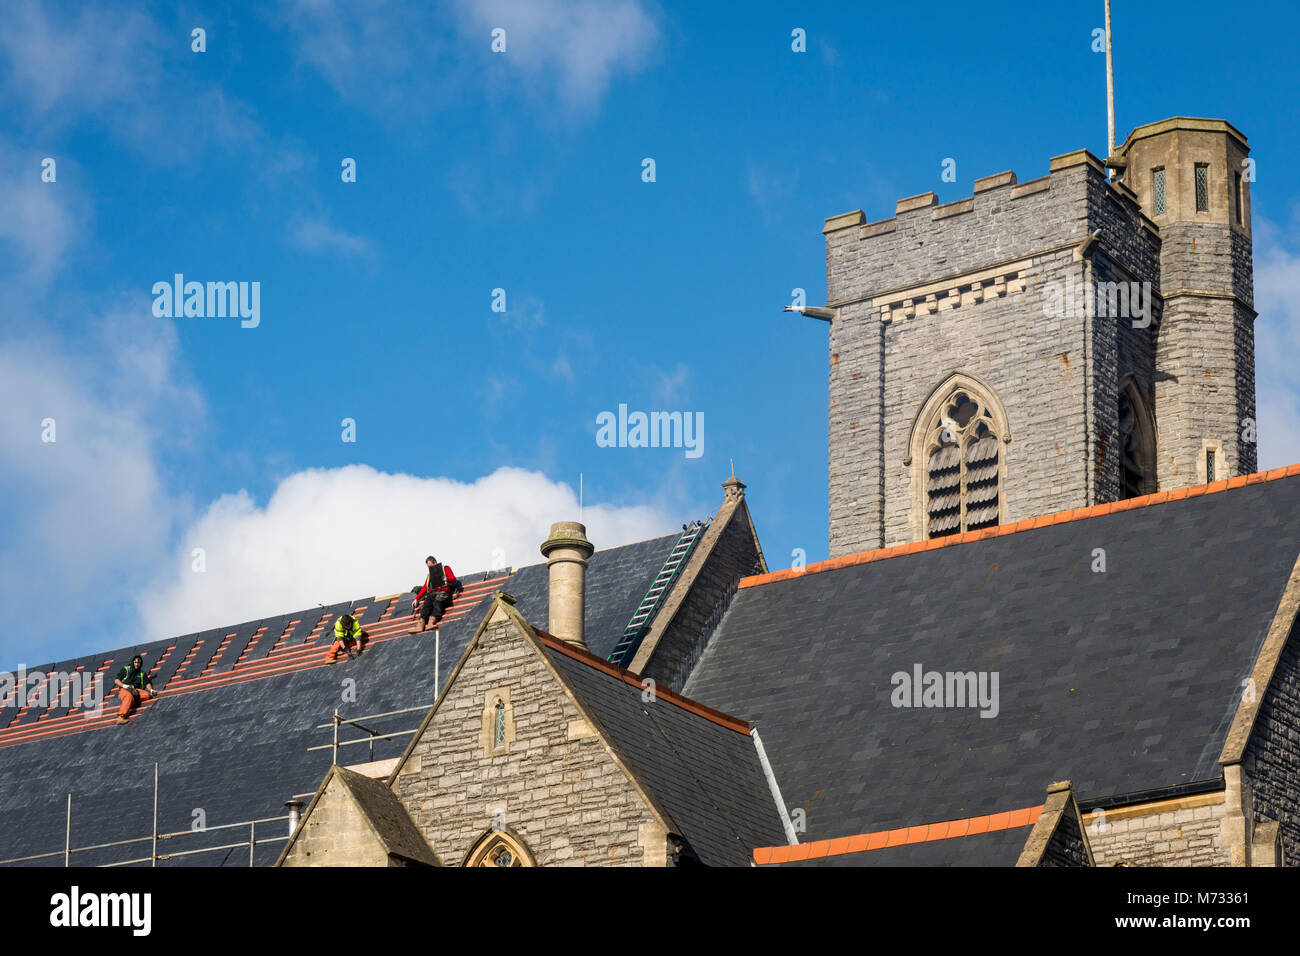 Zur Festsetzung der Dach, während die Sonne scheint. Das satteldach aller Heiligen Kirche in Barry, Wales auf einem hellen, sonnigen Tag unter einem blauen Himmel repariert wird Stockfoto